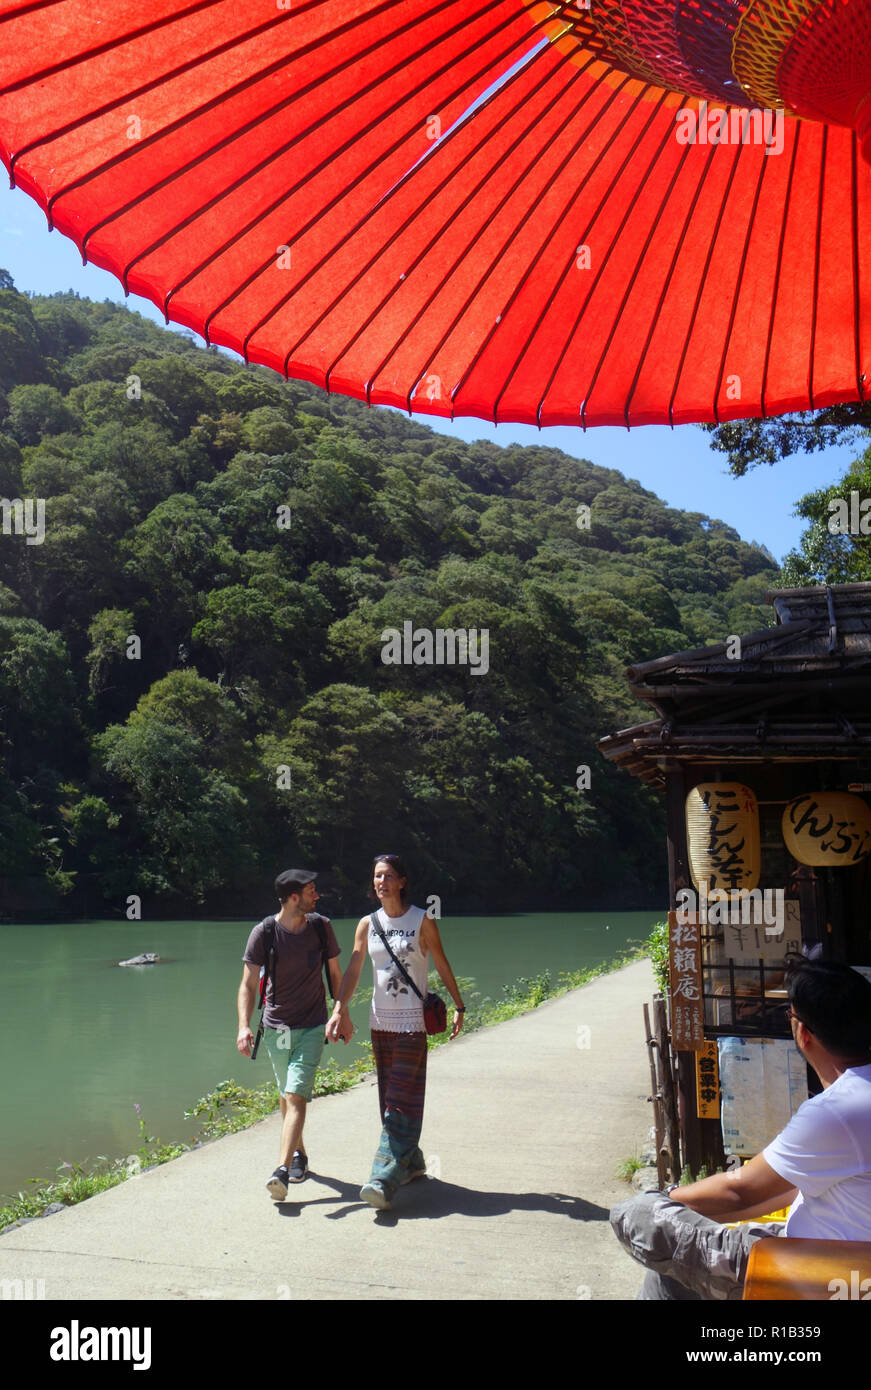 Les touristes se promener le long de la rivière Oi lors de canicule, Kyoto, Japon. Pas de monsieur ou PR Banque D'Images